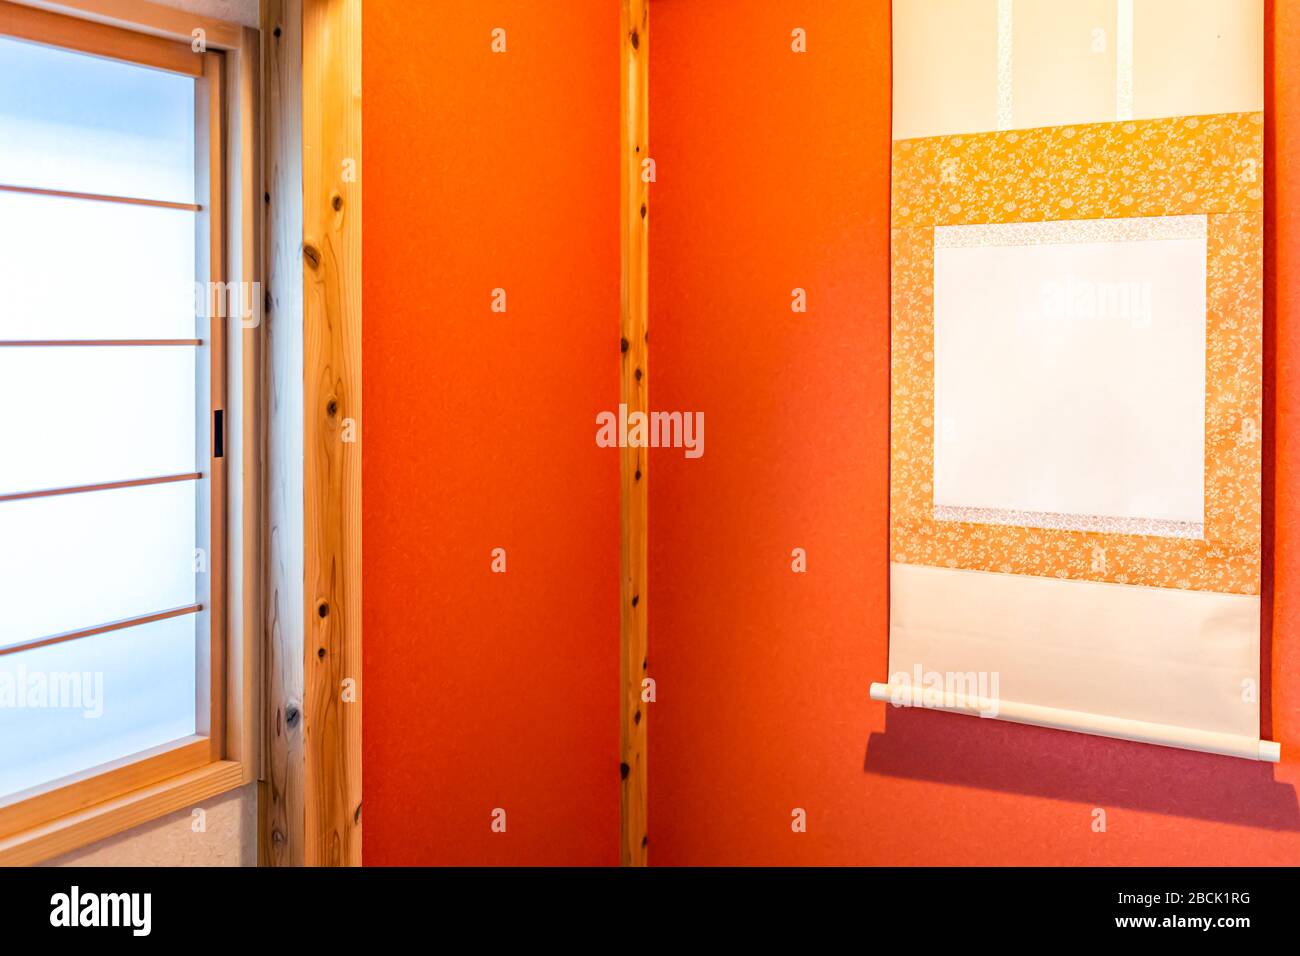 Traditionelles rotes japanisches Haus oder Ryokan mit Fenster und Nische mit tokonoma hängender Schriftrolle und orangefarbener Millionen gelber Farbe Stockfoto